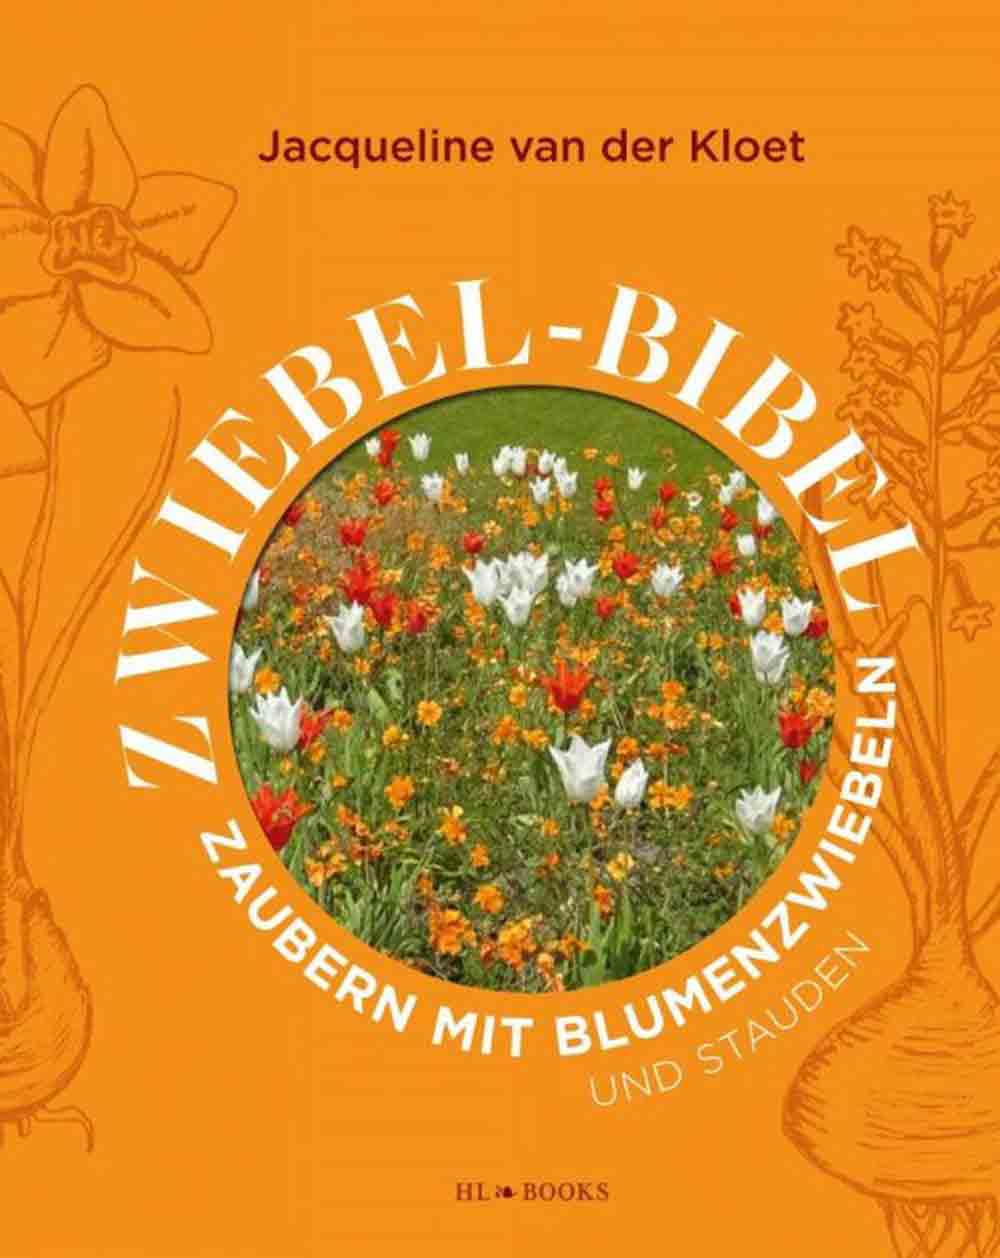 Zaubern mit Blumenzwiebeln und Stauden: die Zwiebel Bibel der Jacqueline van der Kloet